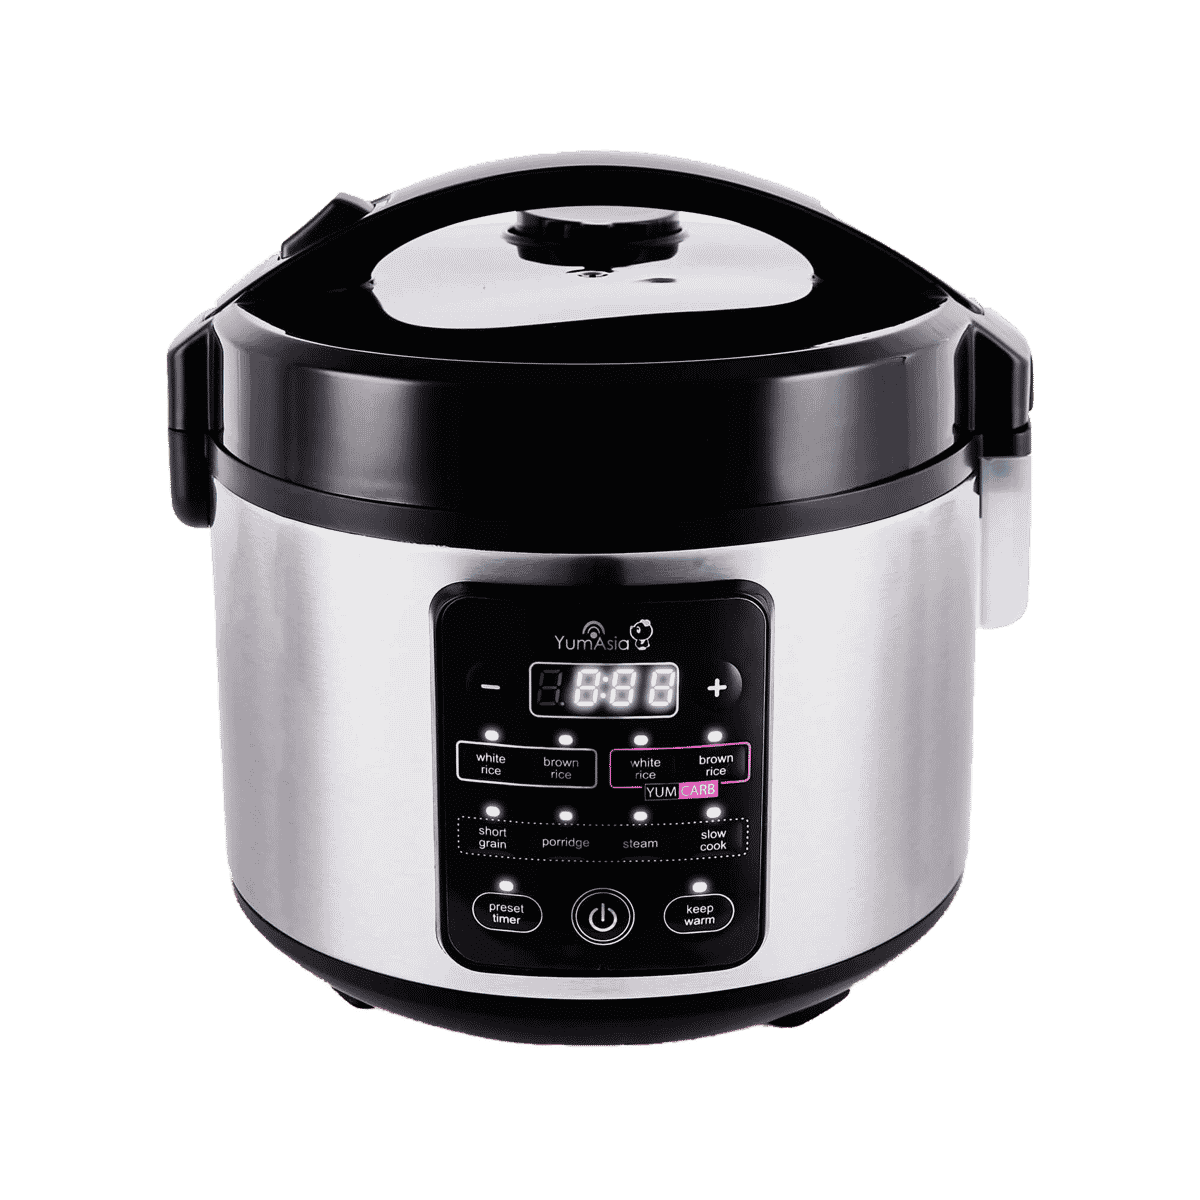 Black&decker 1.0lits rice cooker